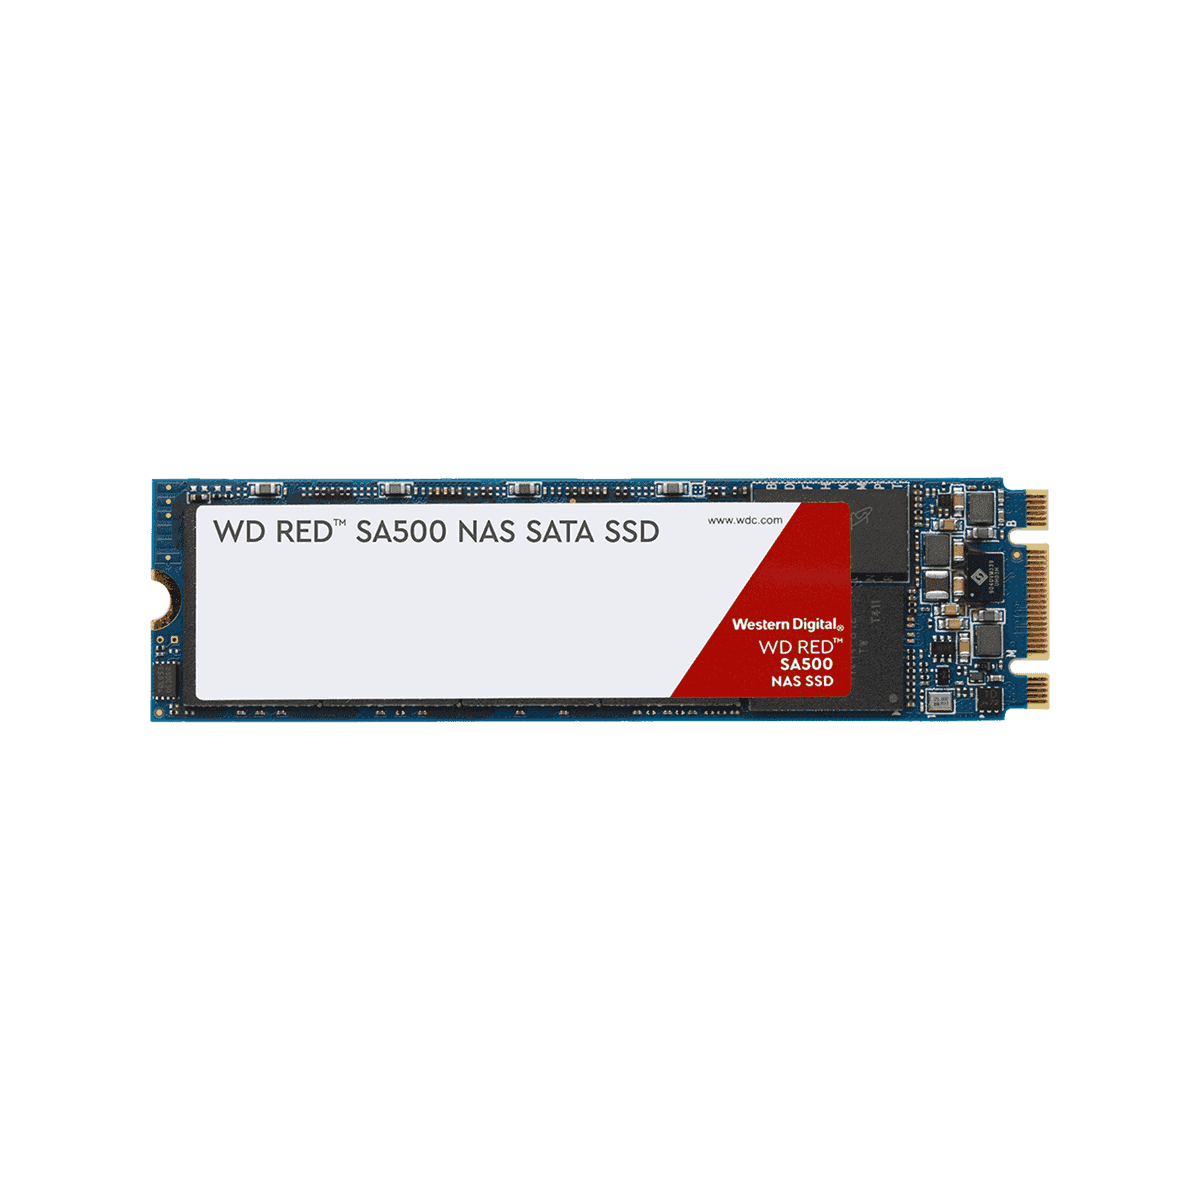 39244円 出荷 Western Digital WDS400T1R0A 4TB 2.5インチ SSD WD Red SA500 NAS SATA SSDシリーズ